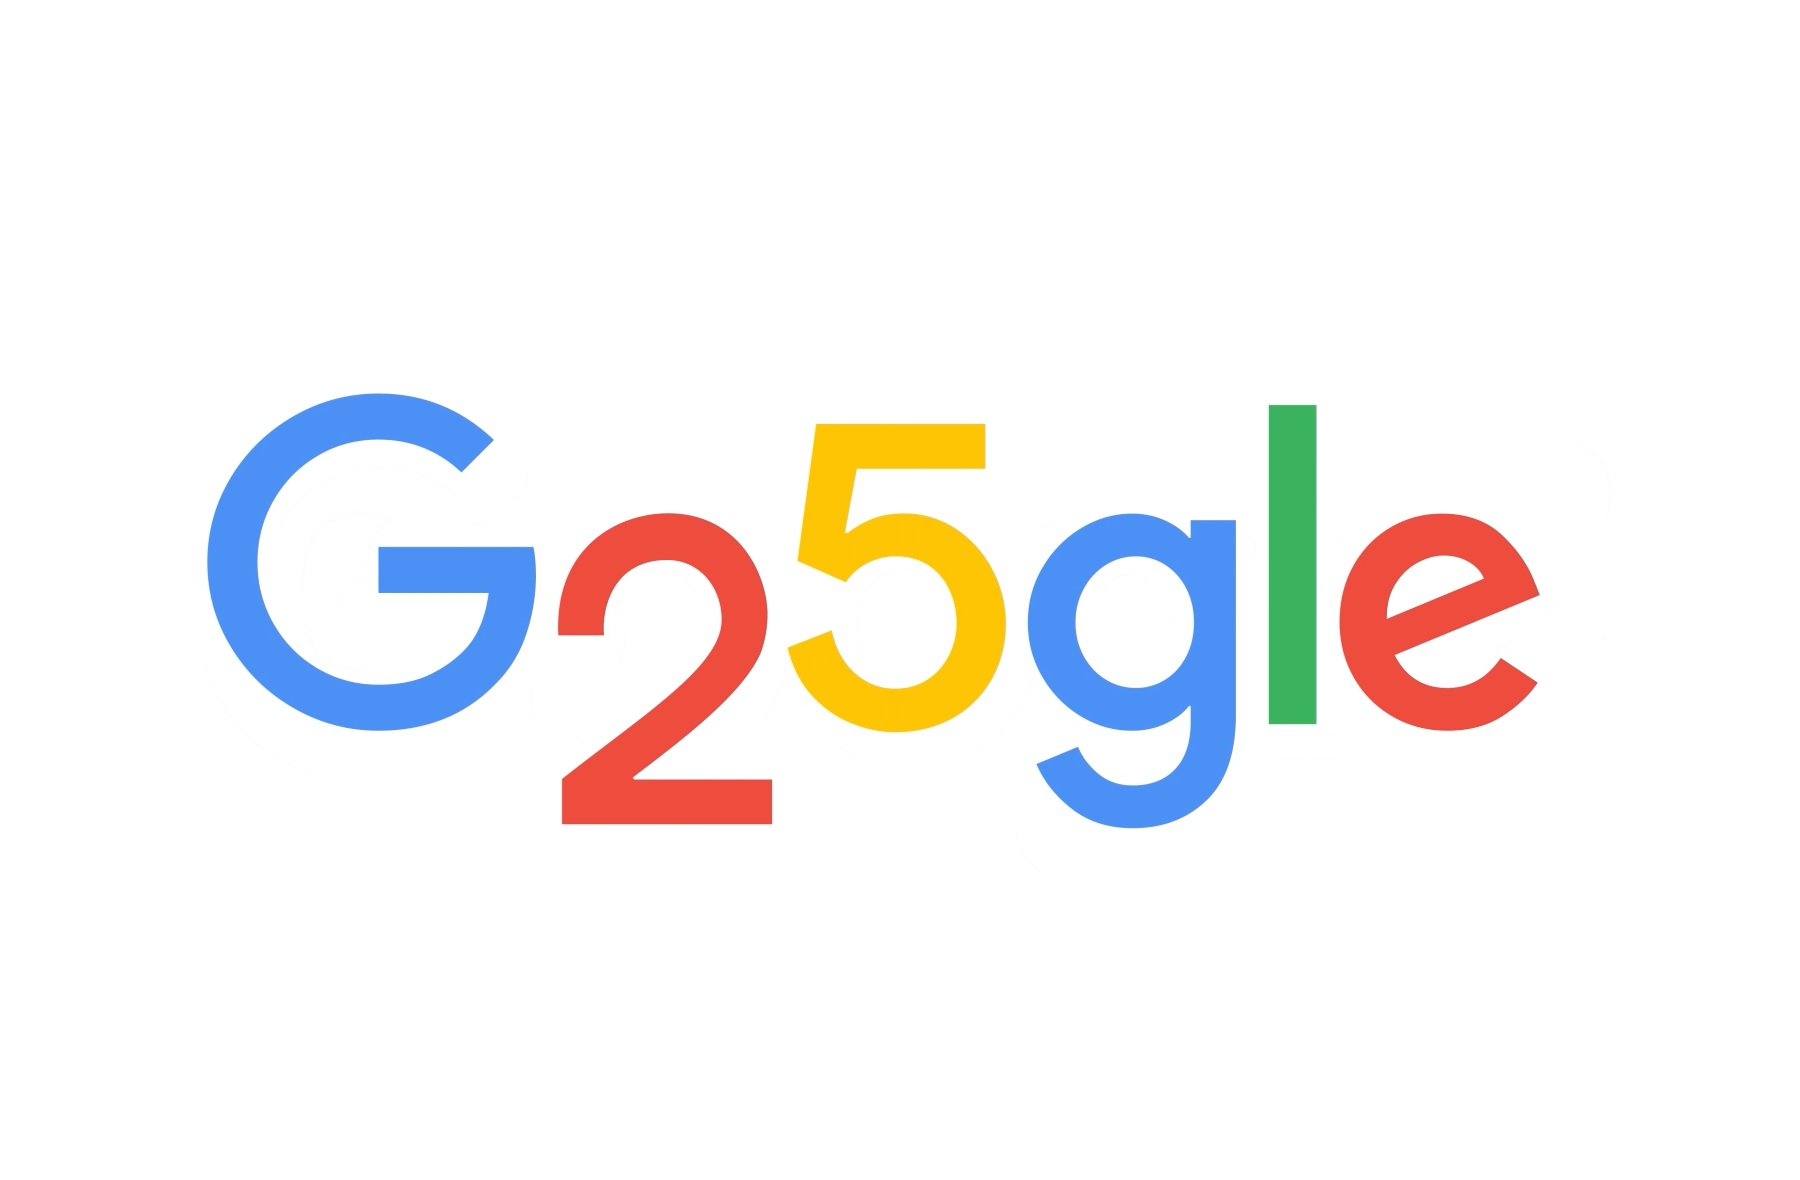 Google compie 25 anni e ripercorre le pietre miliari della sua storia